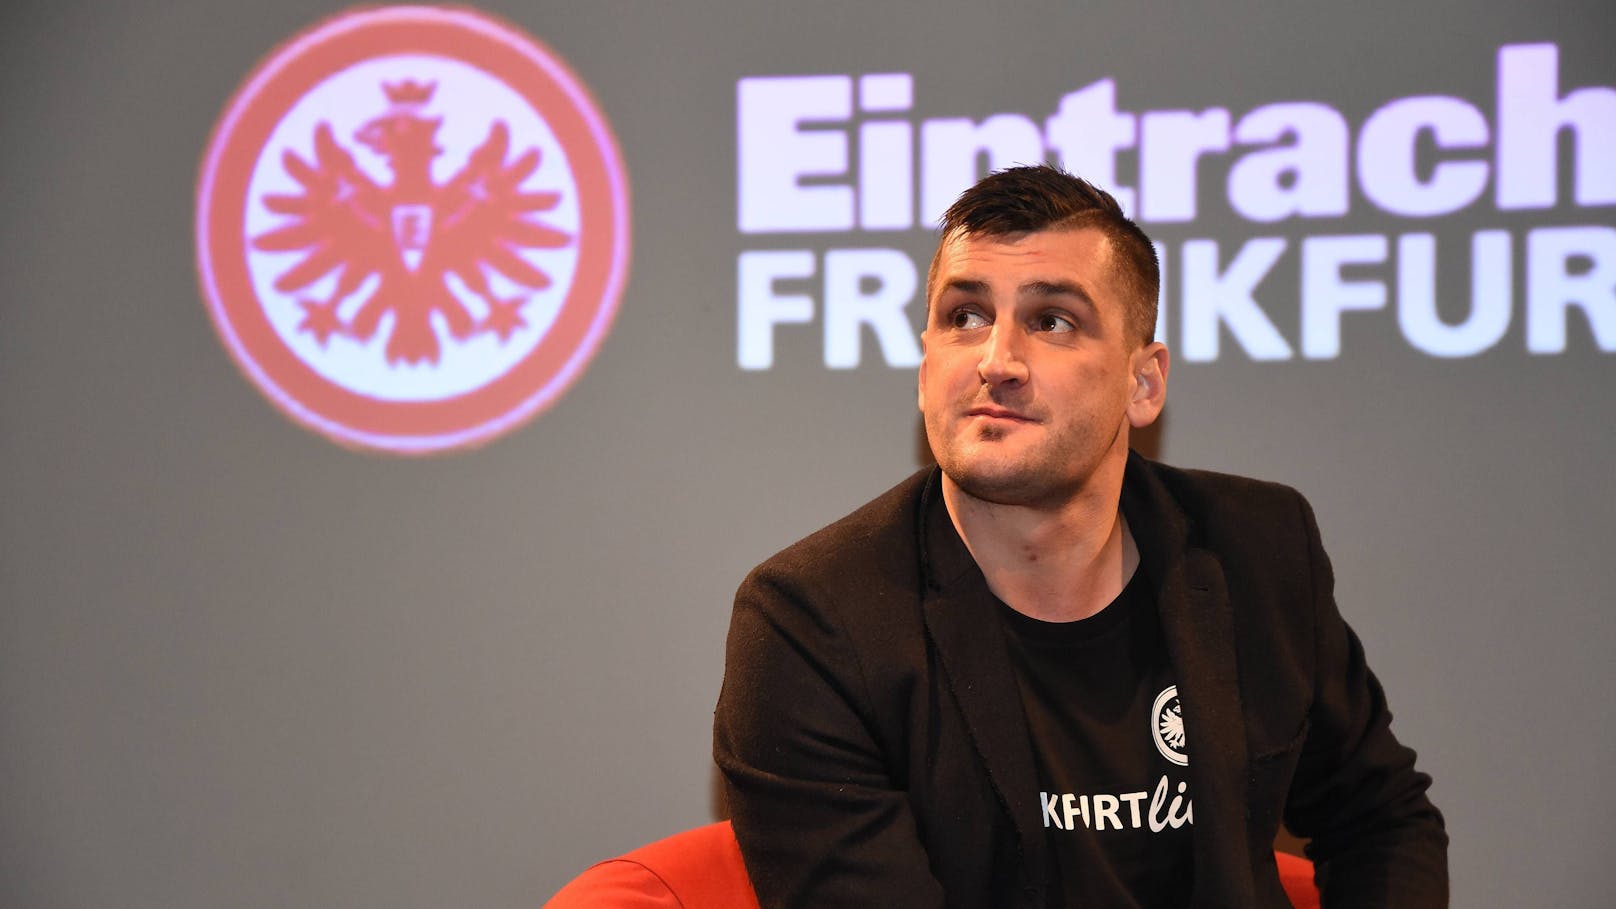 Ex-Bundesliga-Star mit Hilferuf: "Saufe mich zu Tode"